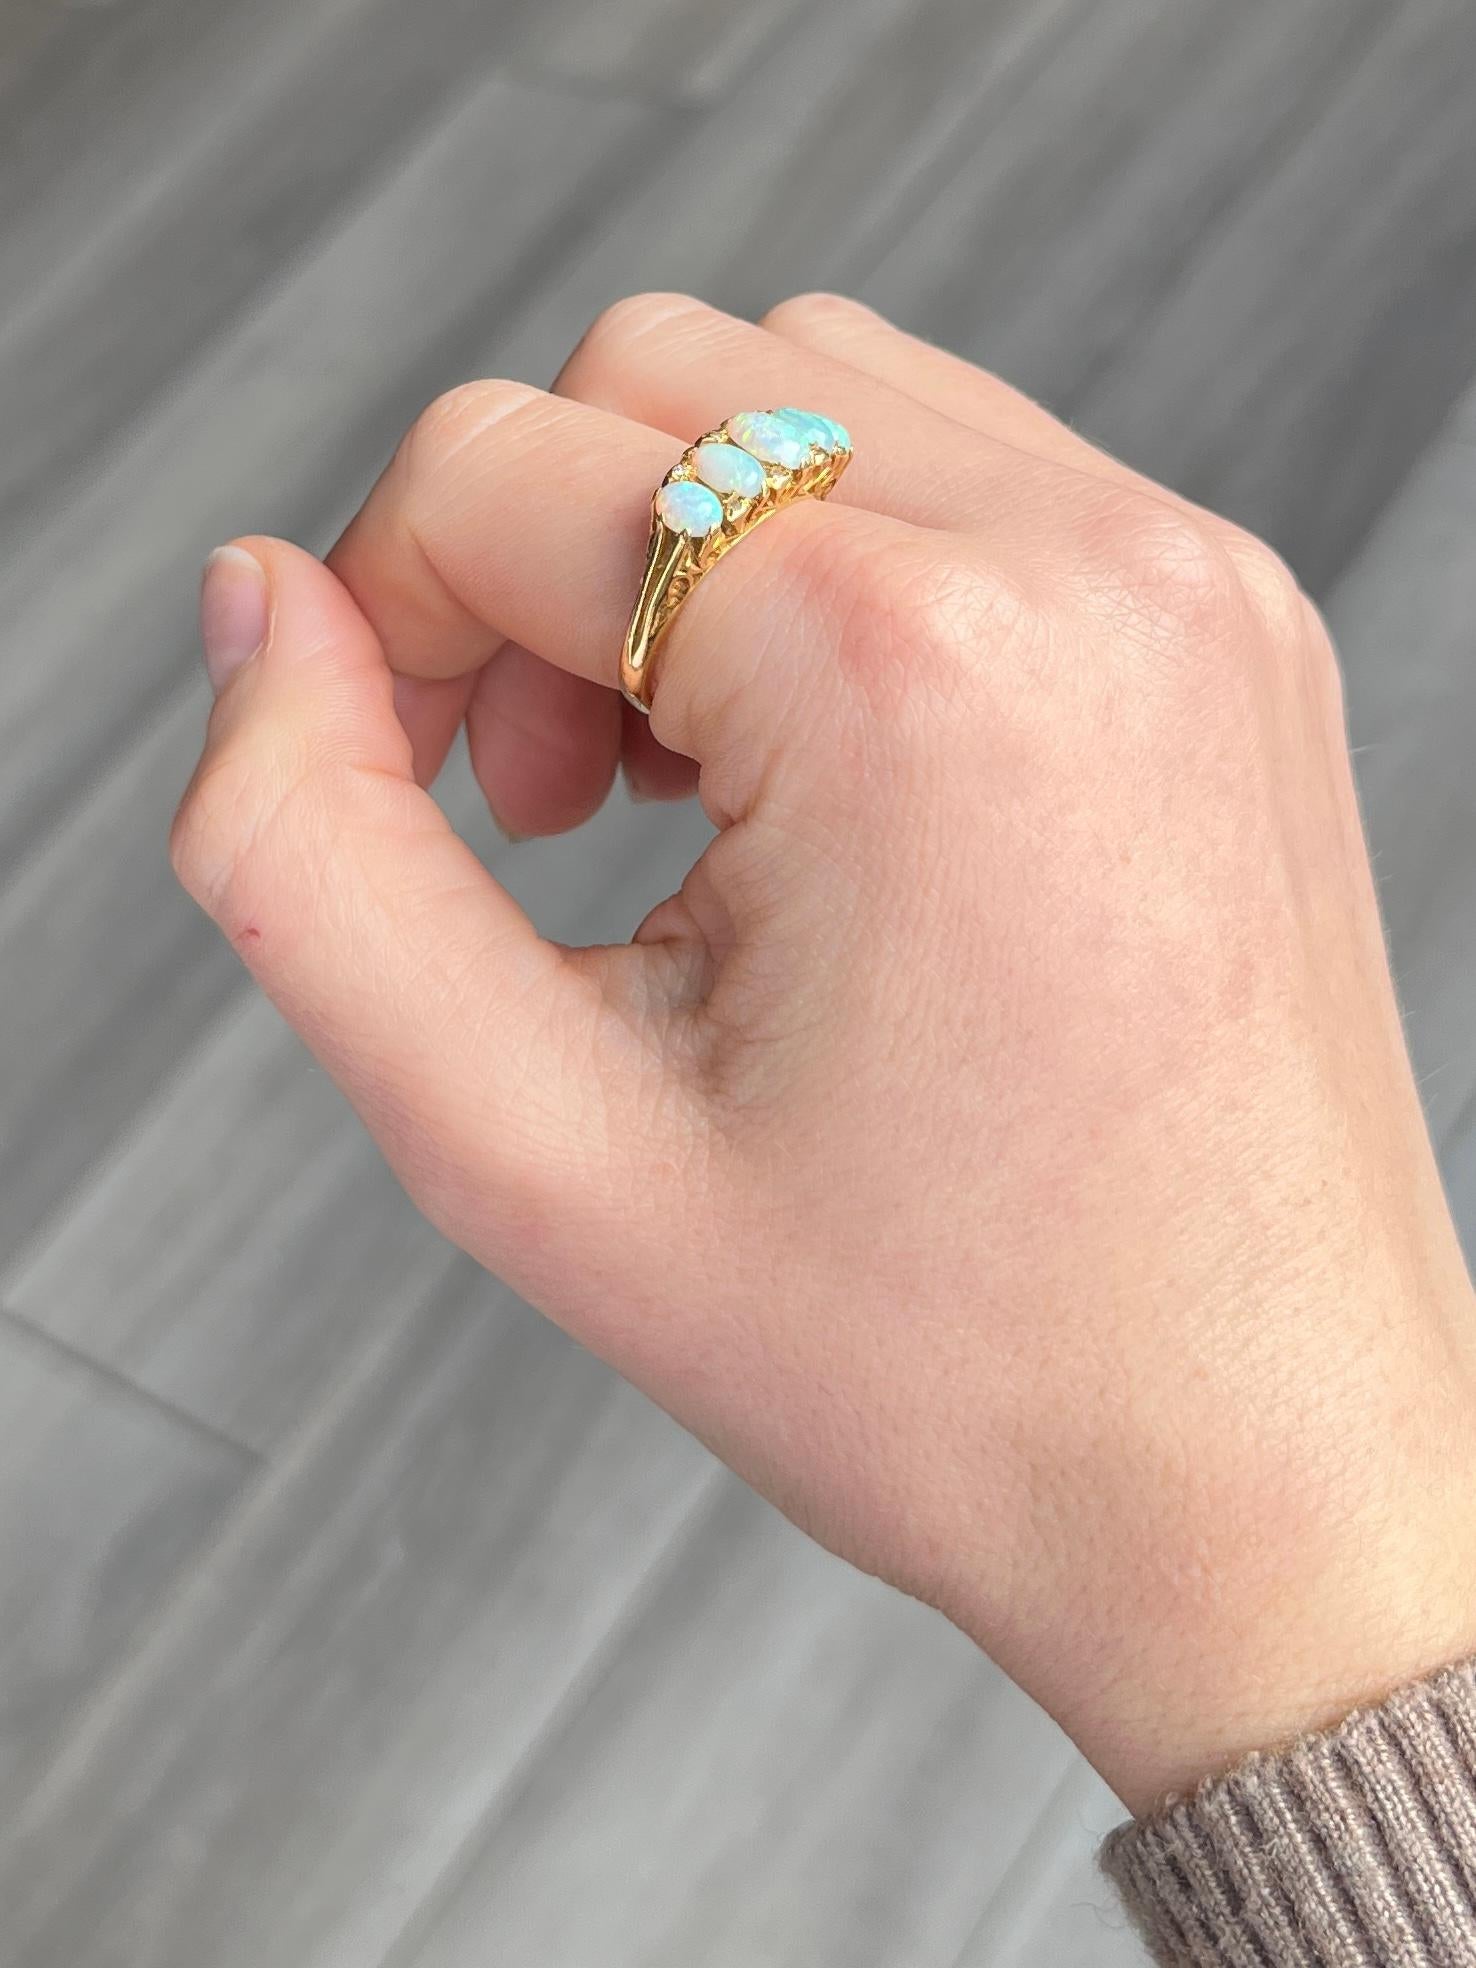 Die Opale in diesem Ring sind wunderschön und haben tolle Farben. Sie sind bündig in die Krallen aus 18-karätigem Gold eingelassen, außerdem gibt es Diamantspitzen und eine sehr verzierte Galerie. Vollständig gestempelt London 1967. 

Ringgröße: P